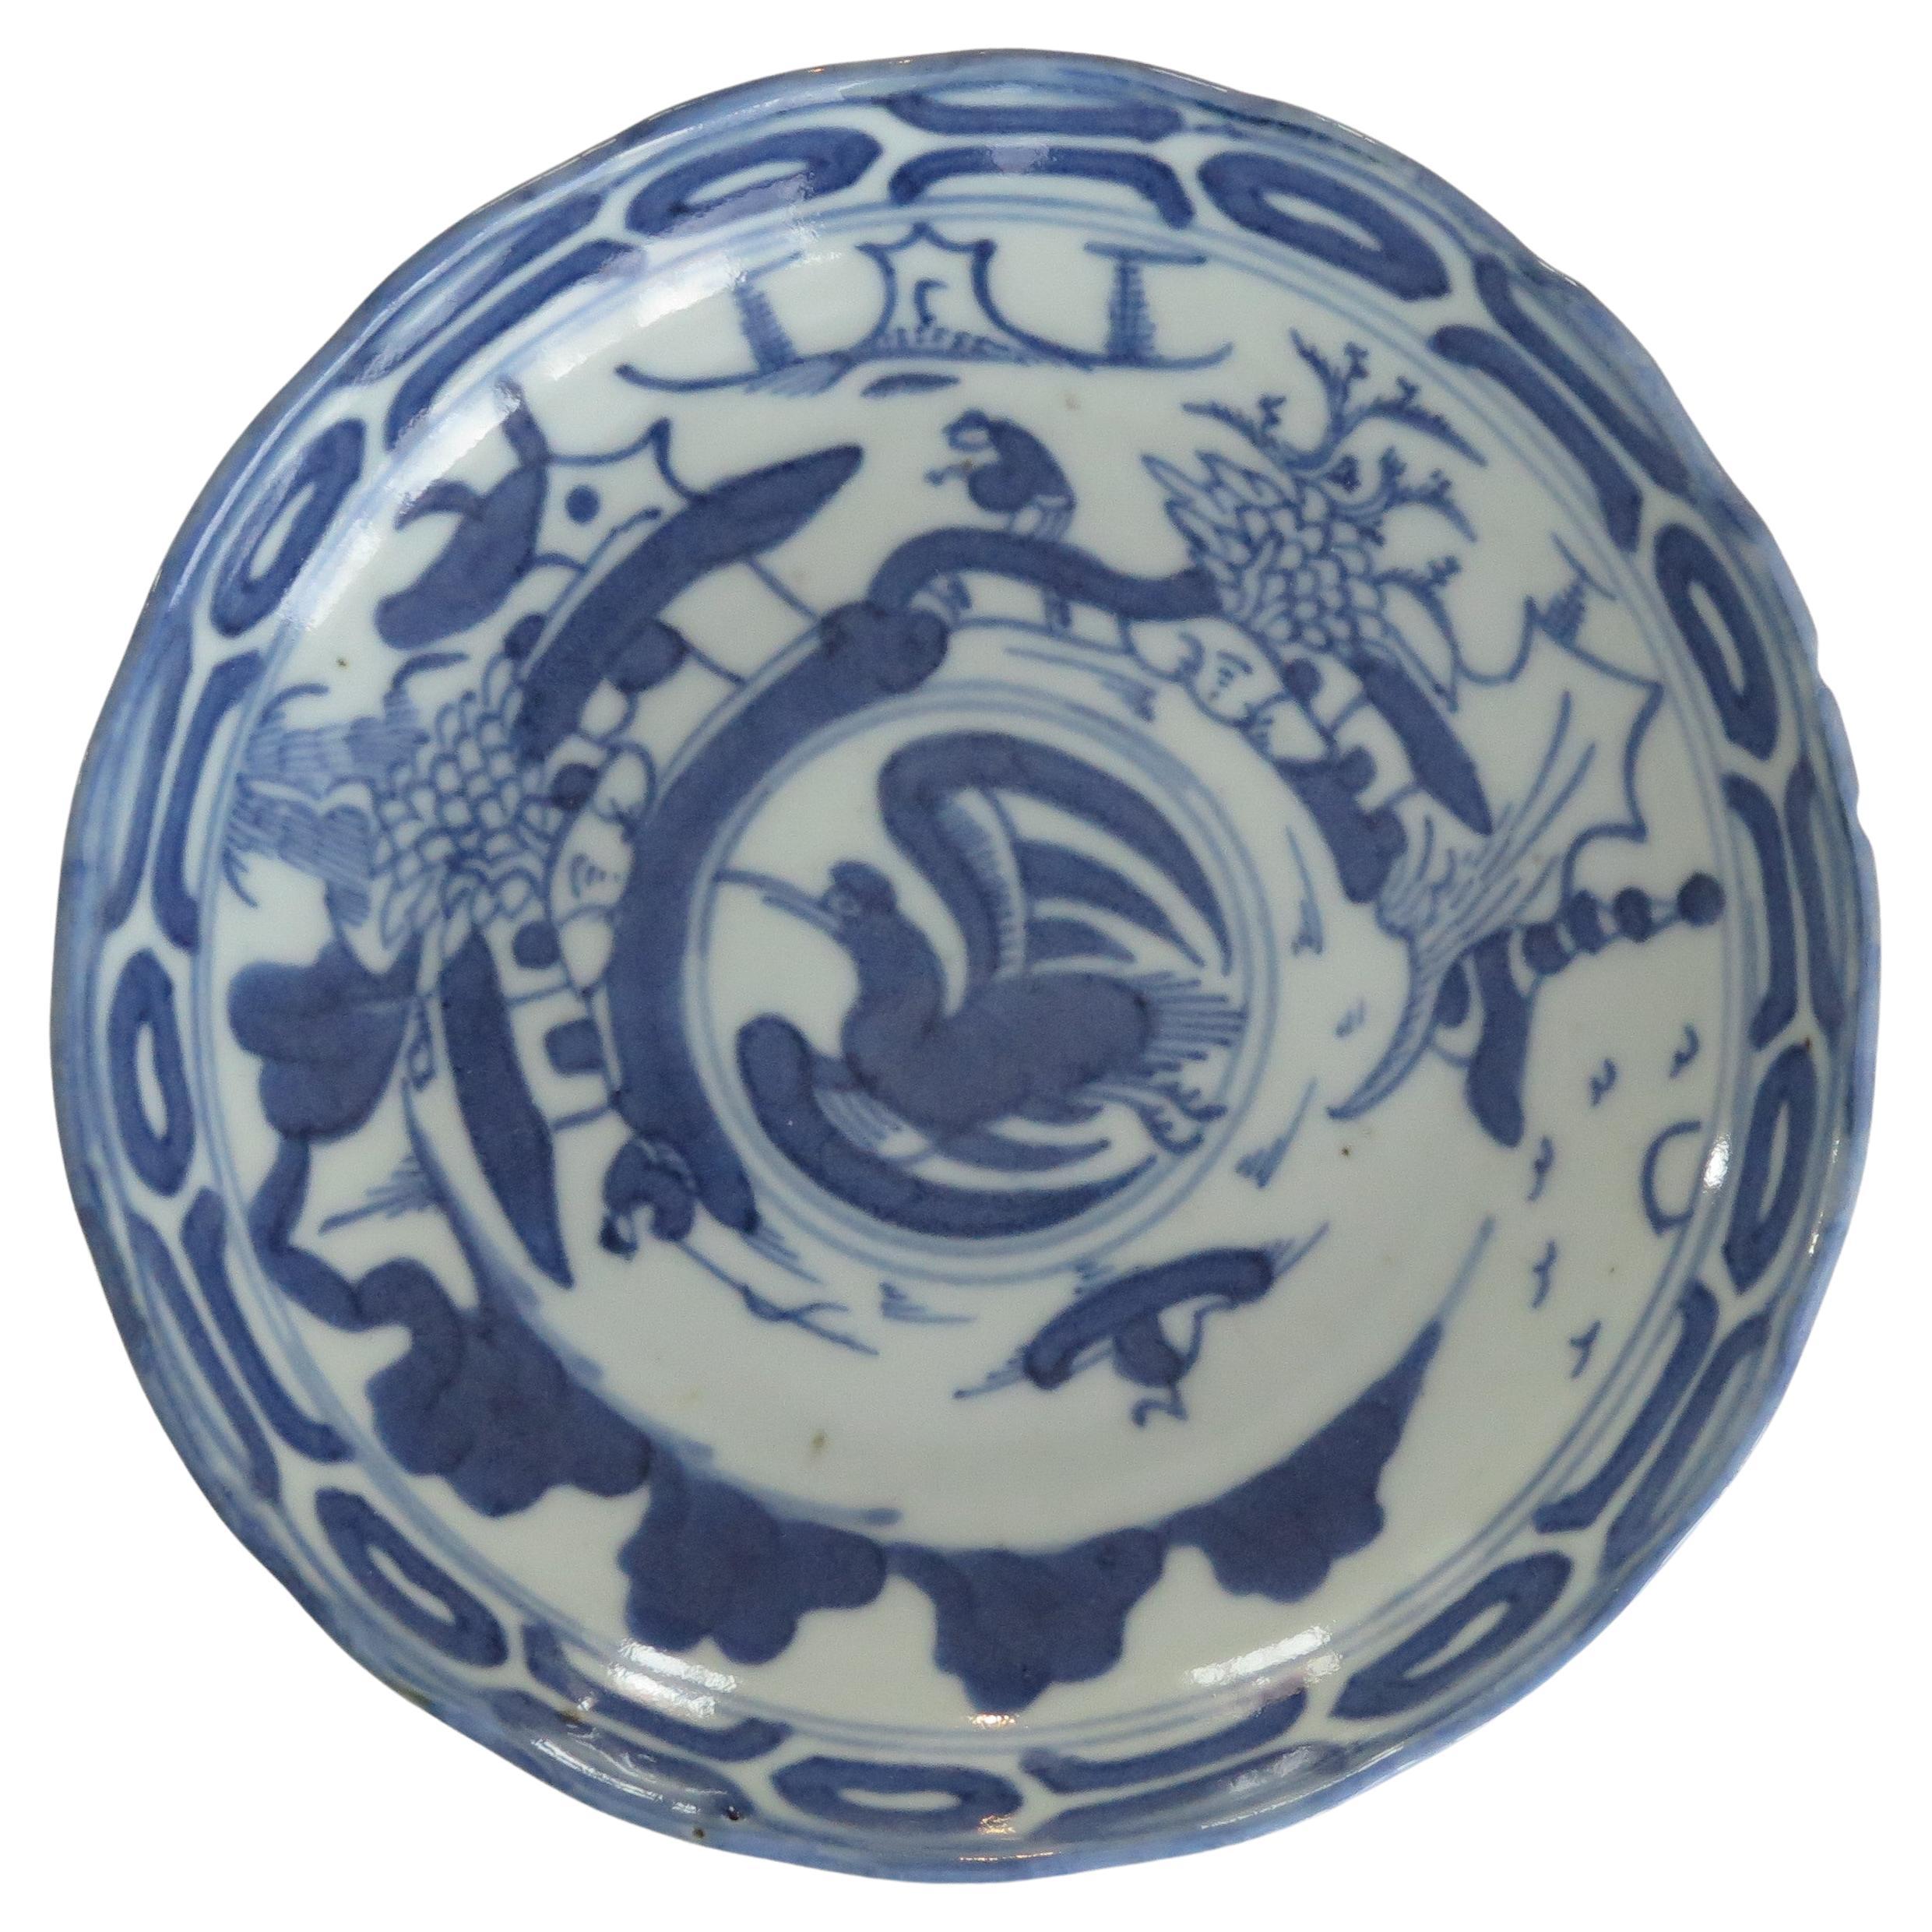 Chinese Ming Dish Blue & White porcelain, Tianqi or Chongzhen Circa 1620-1644